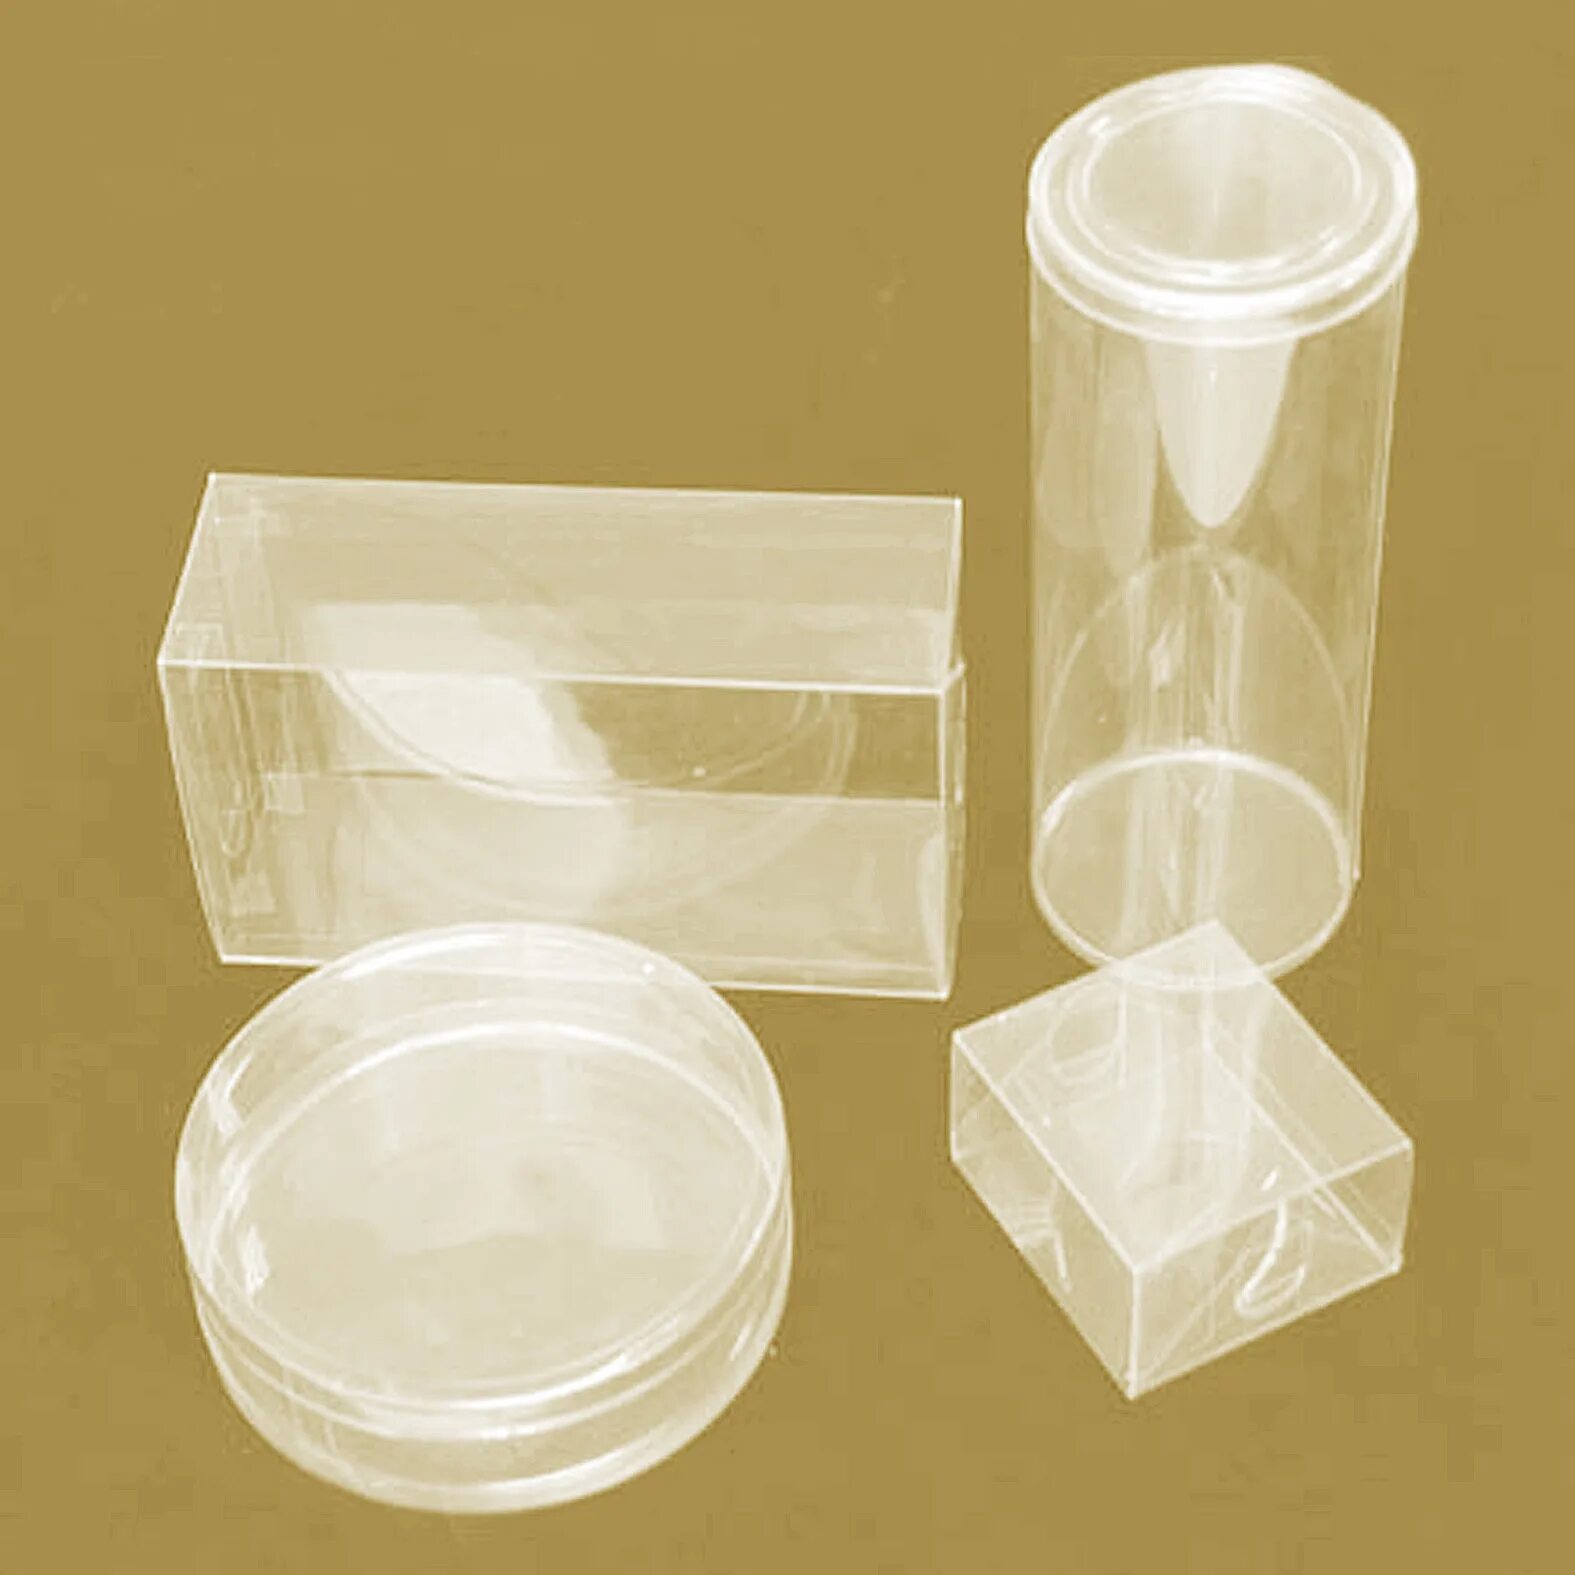 Pp pet. Упаковка пластиковая прозрачная. Упаковка пластиковая прозрачная коробка. Упаковка из пластика маленькая. Упаковка из ПЭТ пластика.